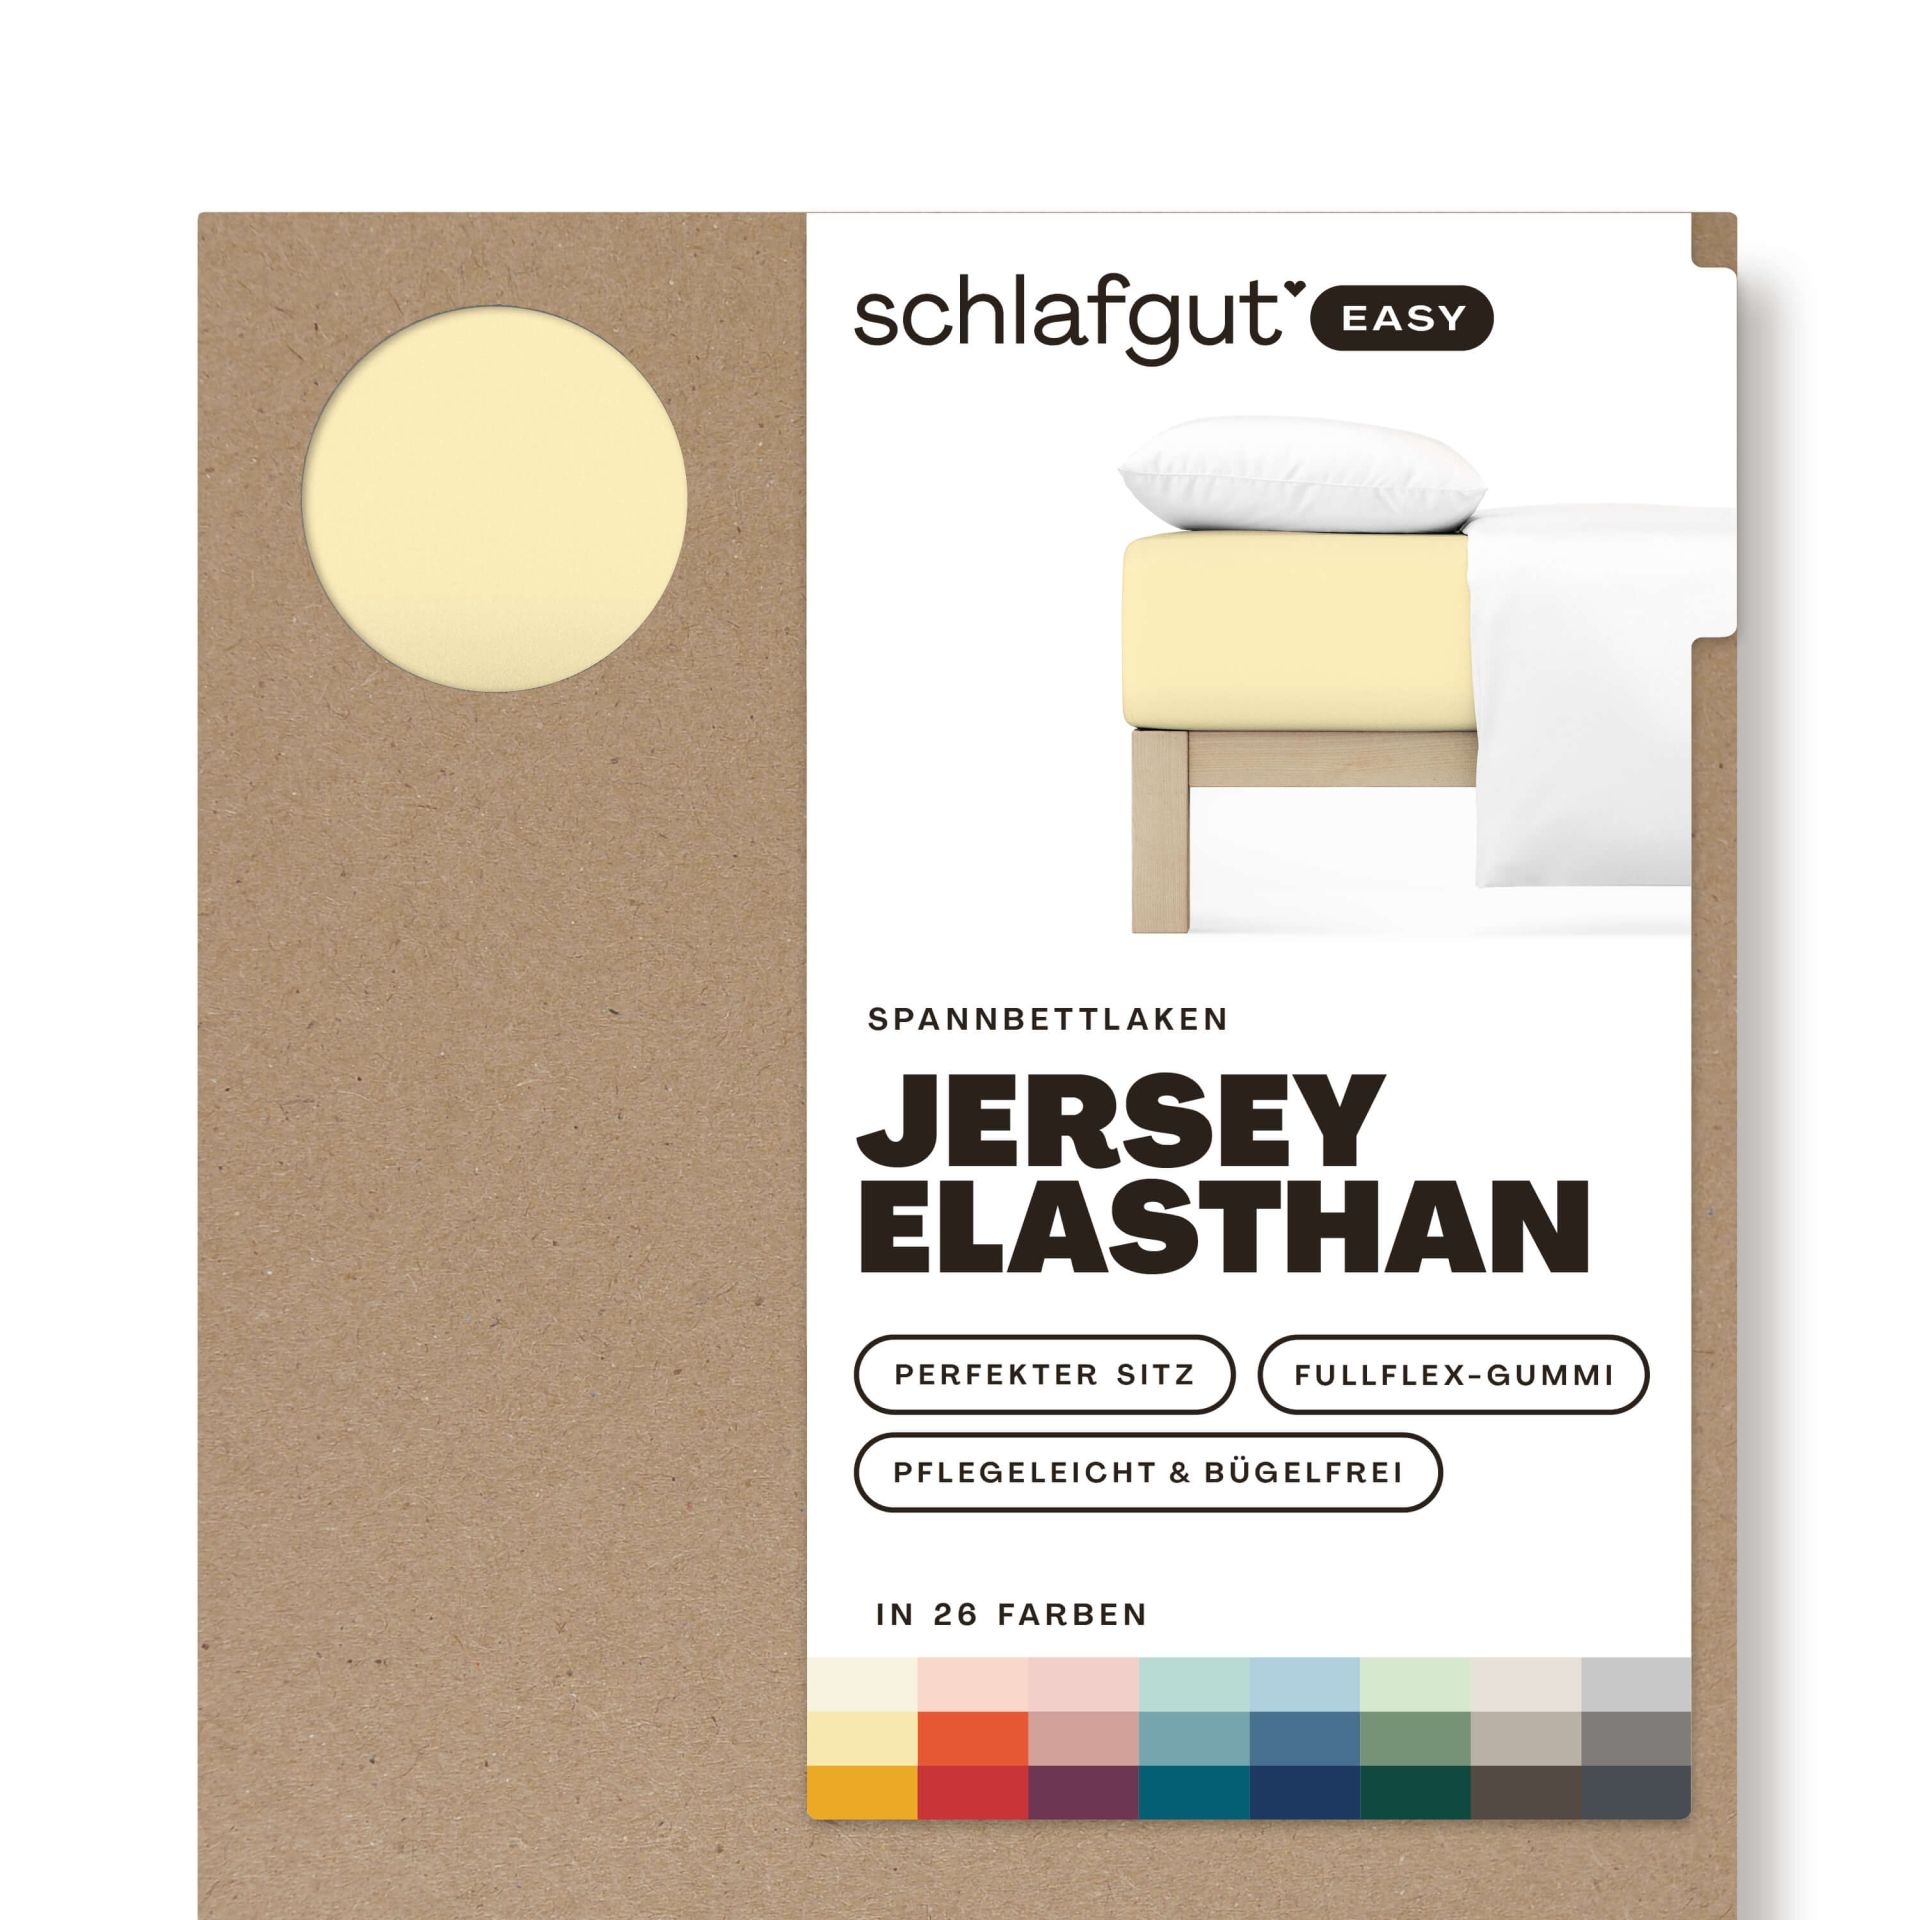 Das Produktbild vom Spannbettlaken der Reihe Easy Elasthan in Farbe yellow mid von Schlafgut